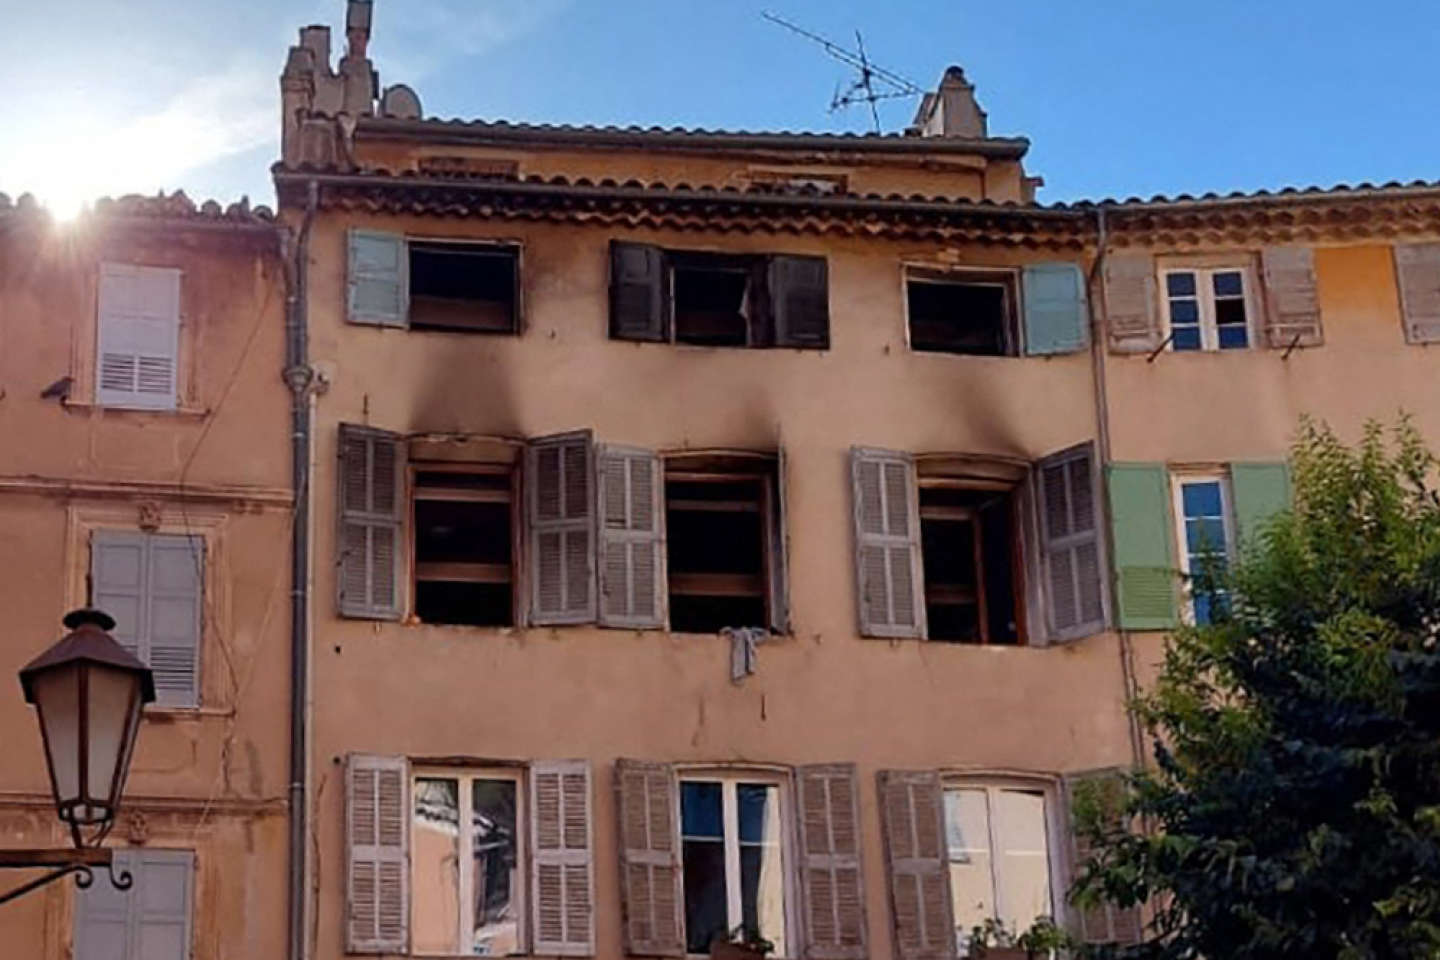 Incendie d’un immeuble à Grasse : le suspect reconnaît « être à l’origine de l’incendie » de façon « involontaire »